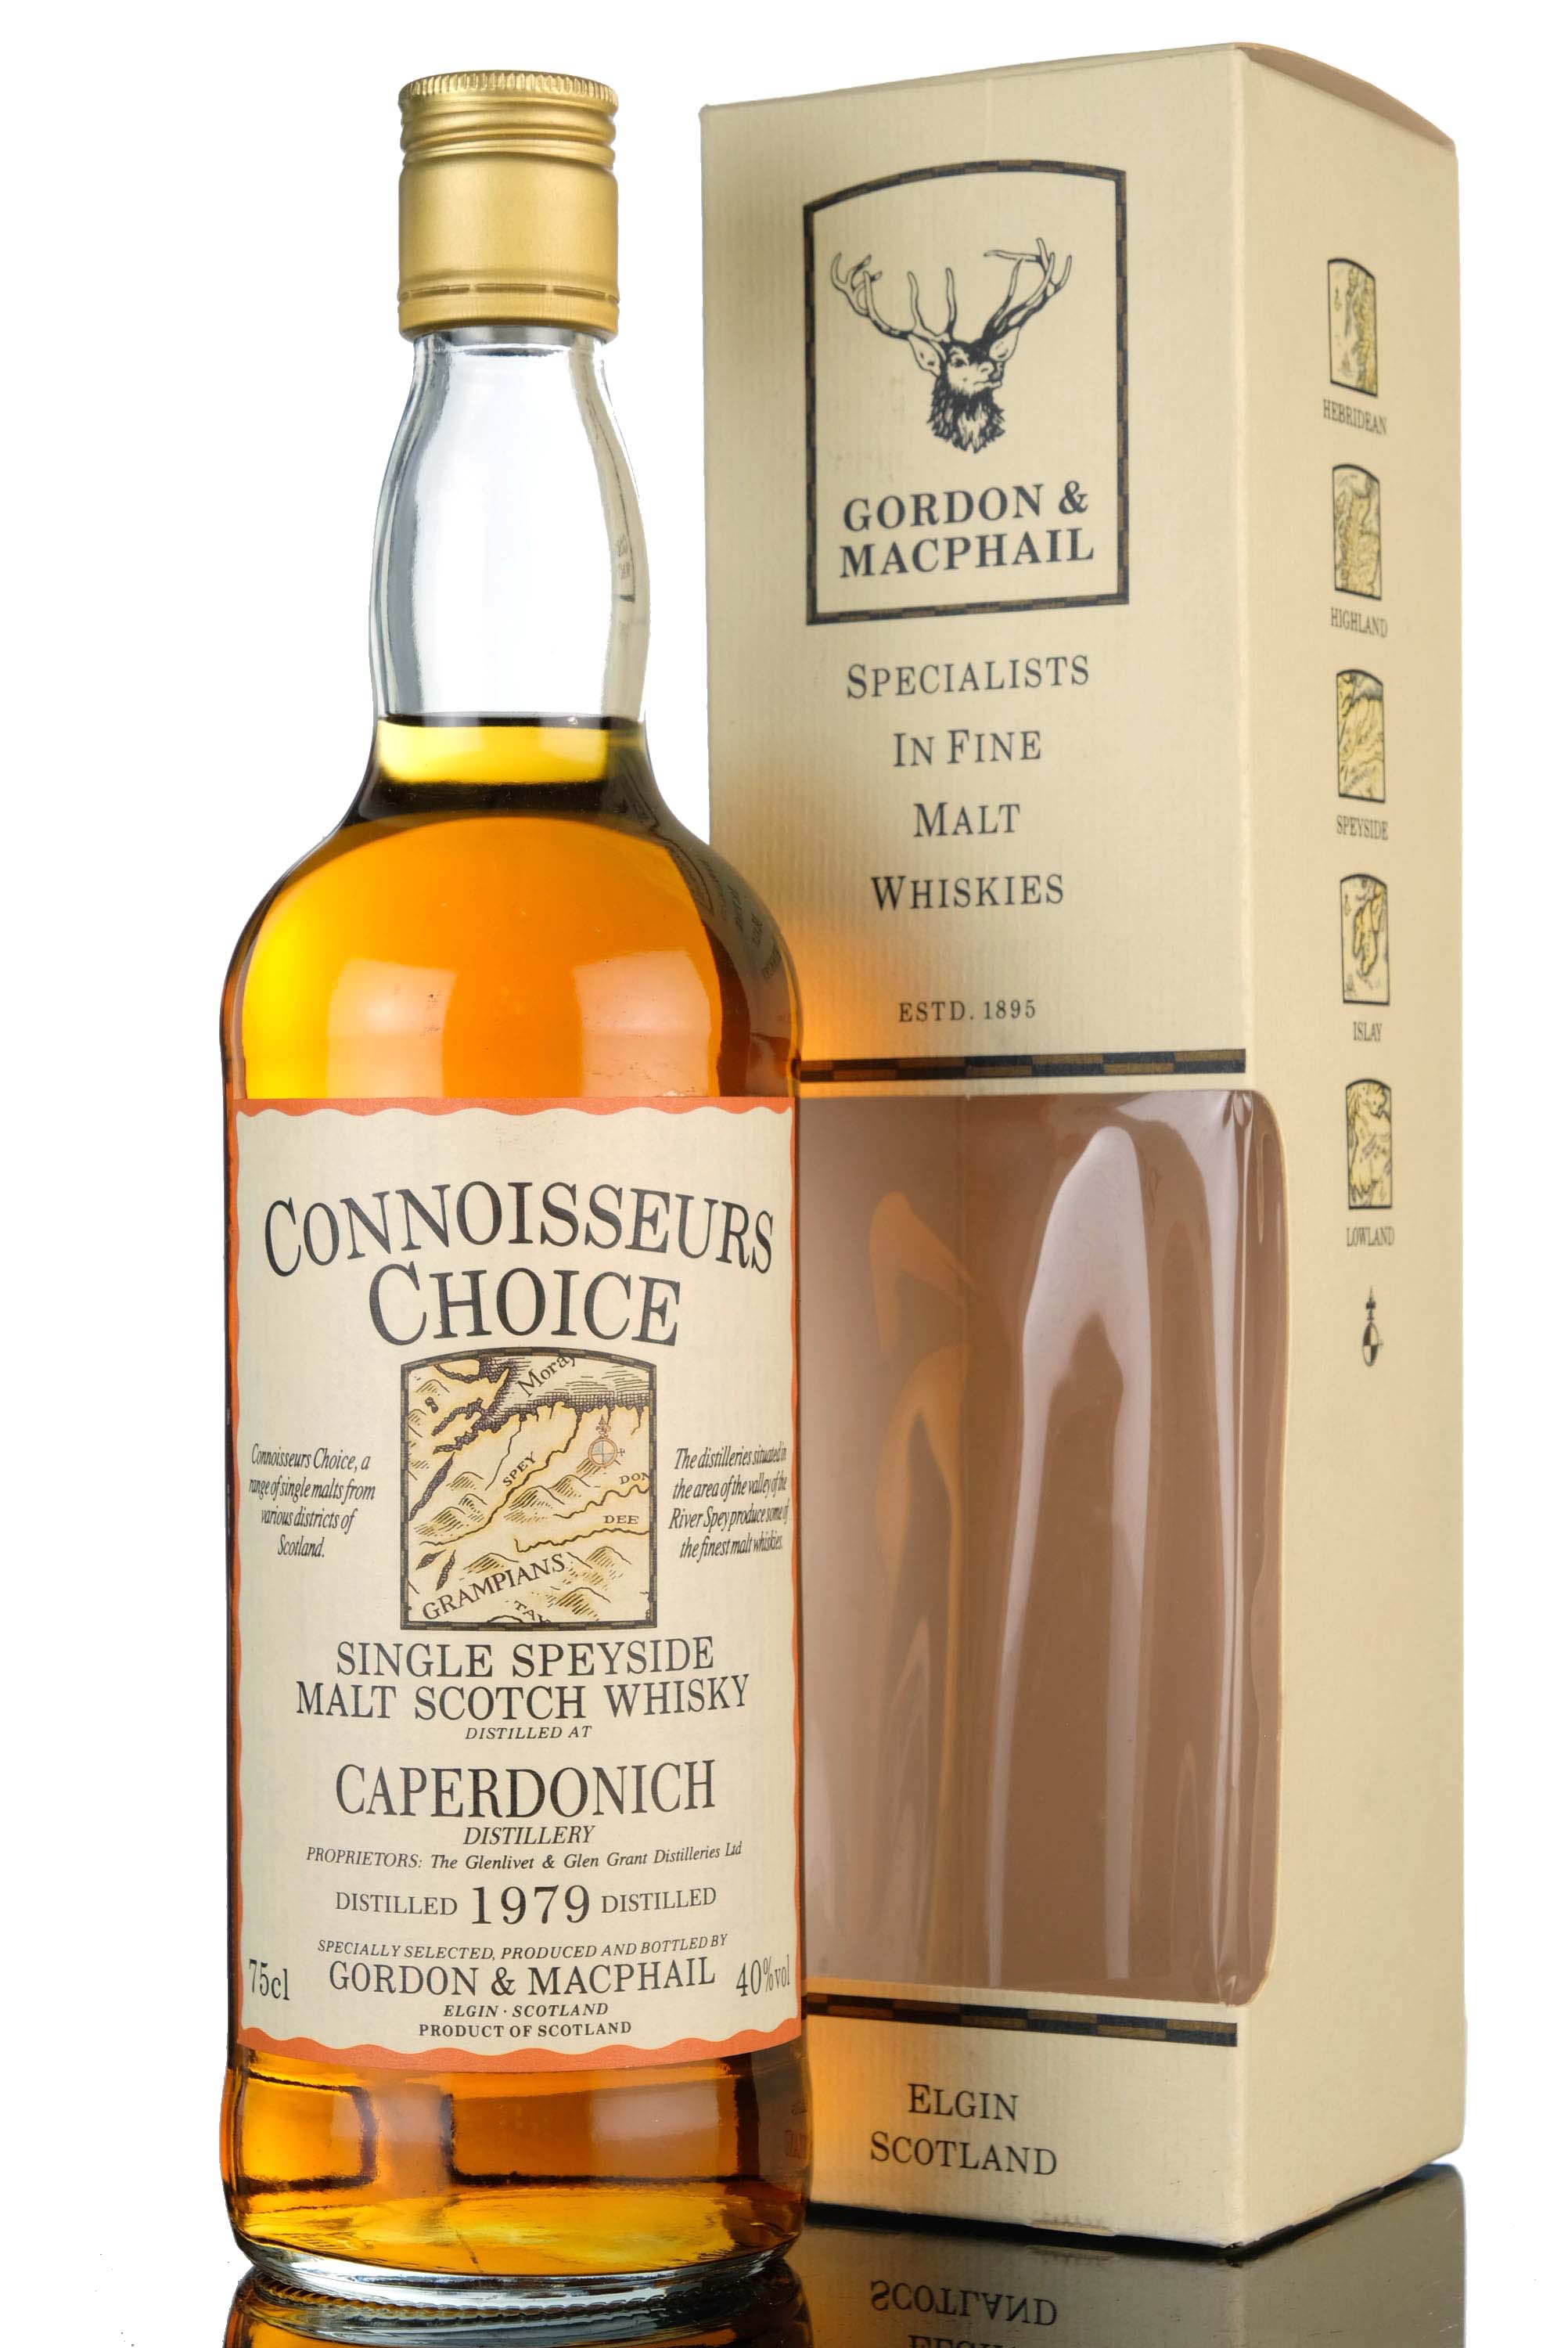 Caperdonich 1979 - Connoisseurs Choice